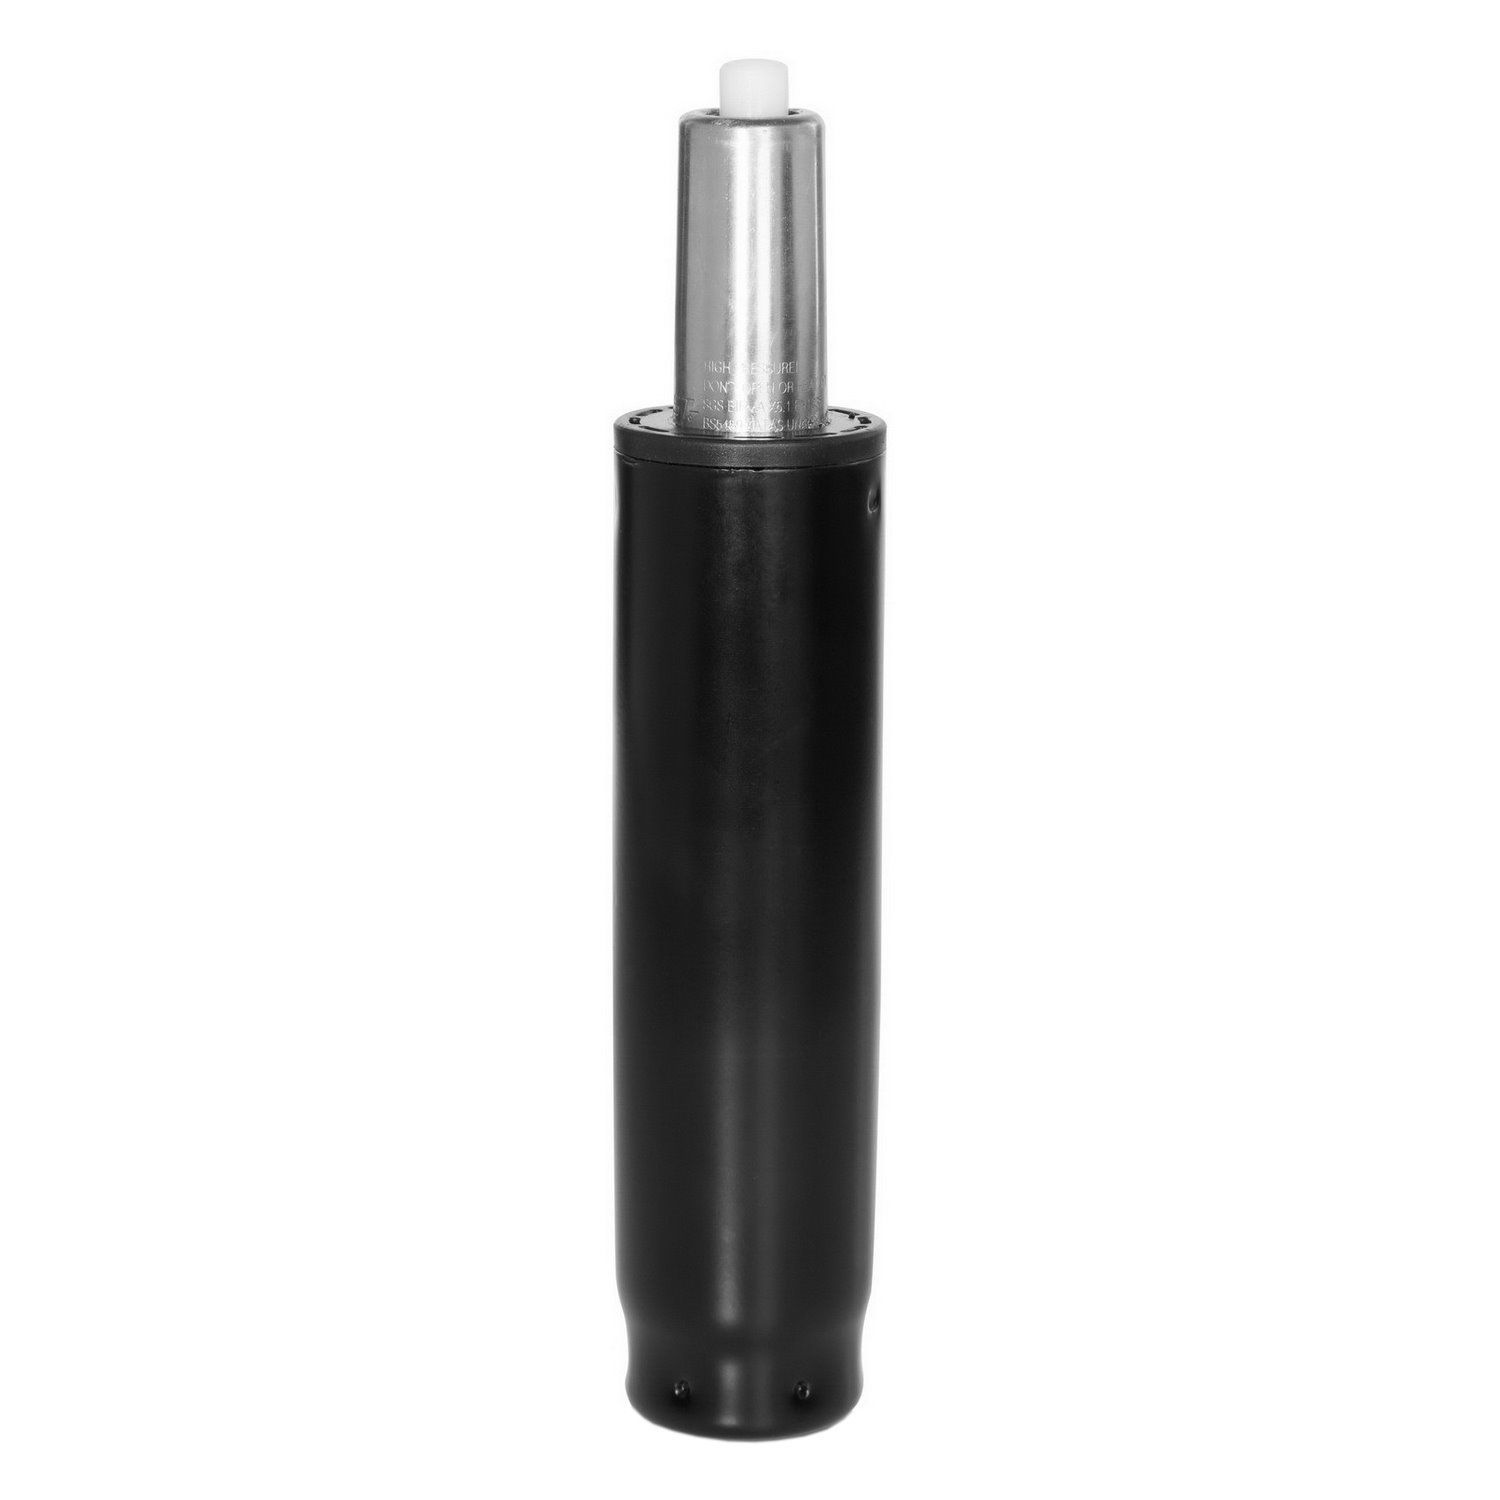 Gasfeder / Gasdruckfeder L - chrom, 29-40 cm hjh OFFICE